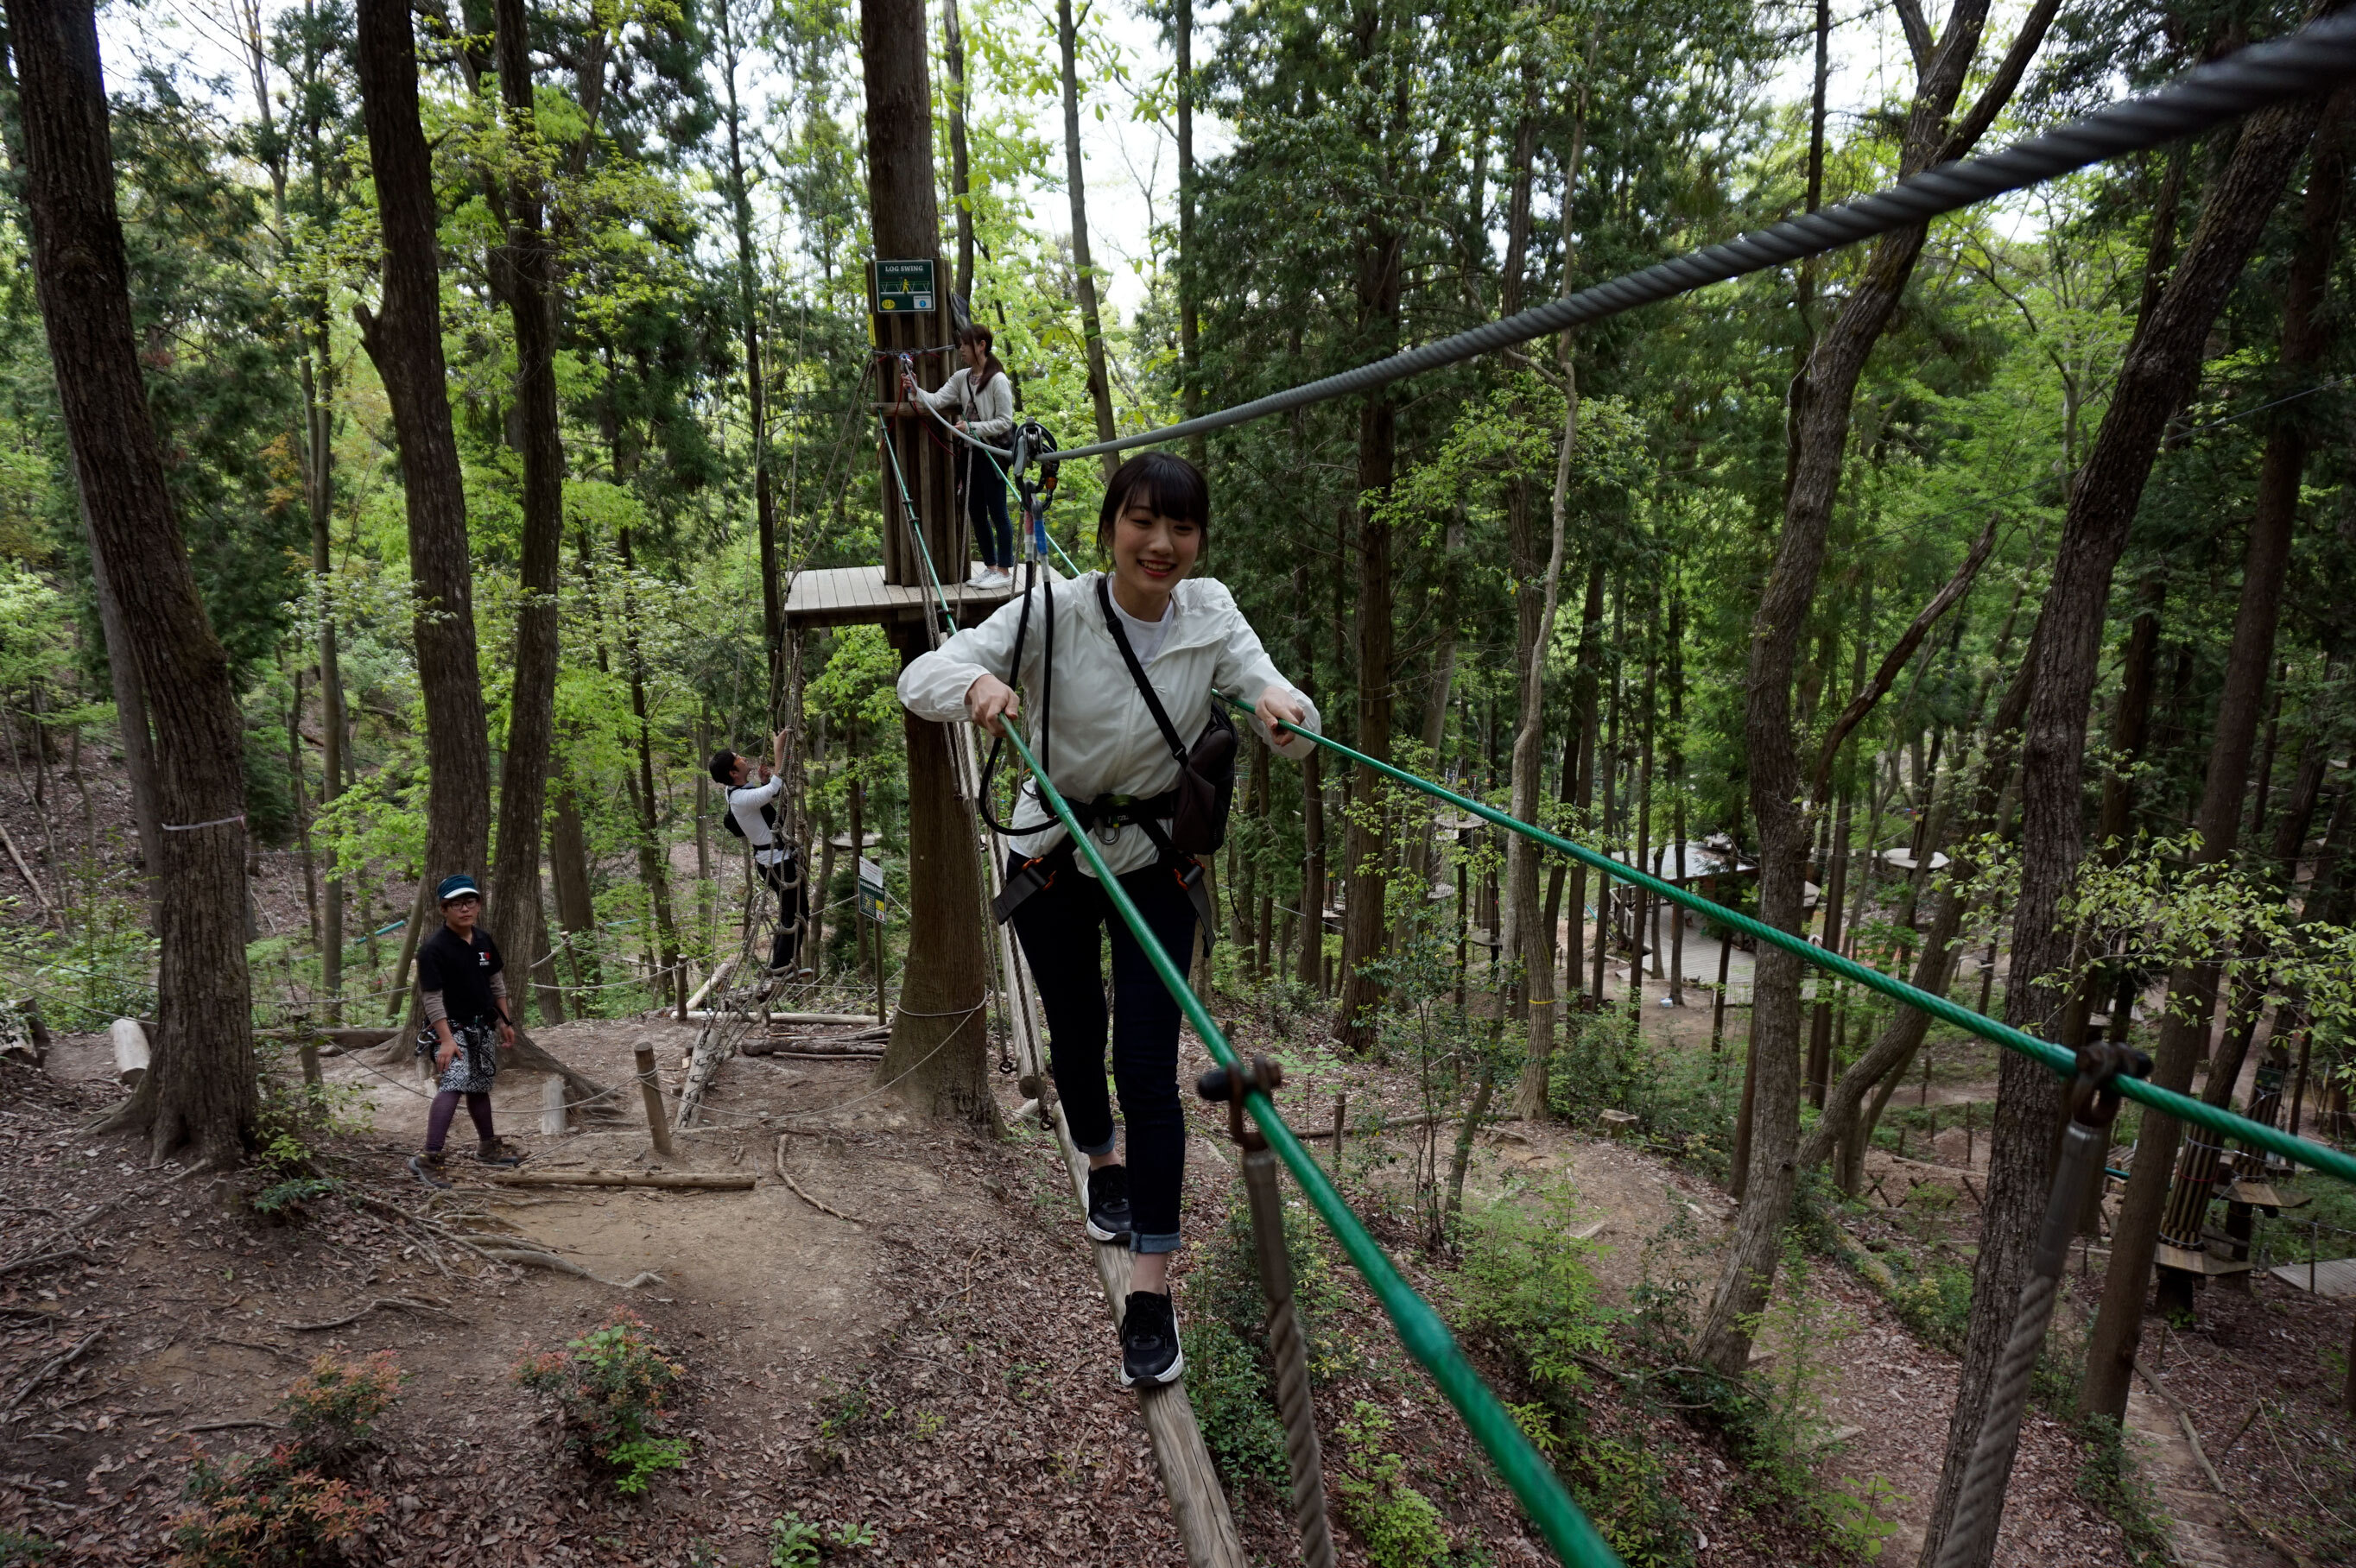 令和最初の夏休み 名古屋から1時間 岐阜県百年公園内に森林活用型アドベンチャーパーク 冒険の森 がオープン 株式会社冒険の森のプレスリリース